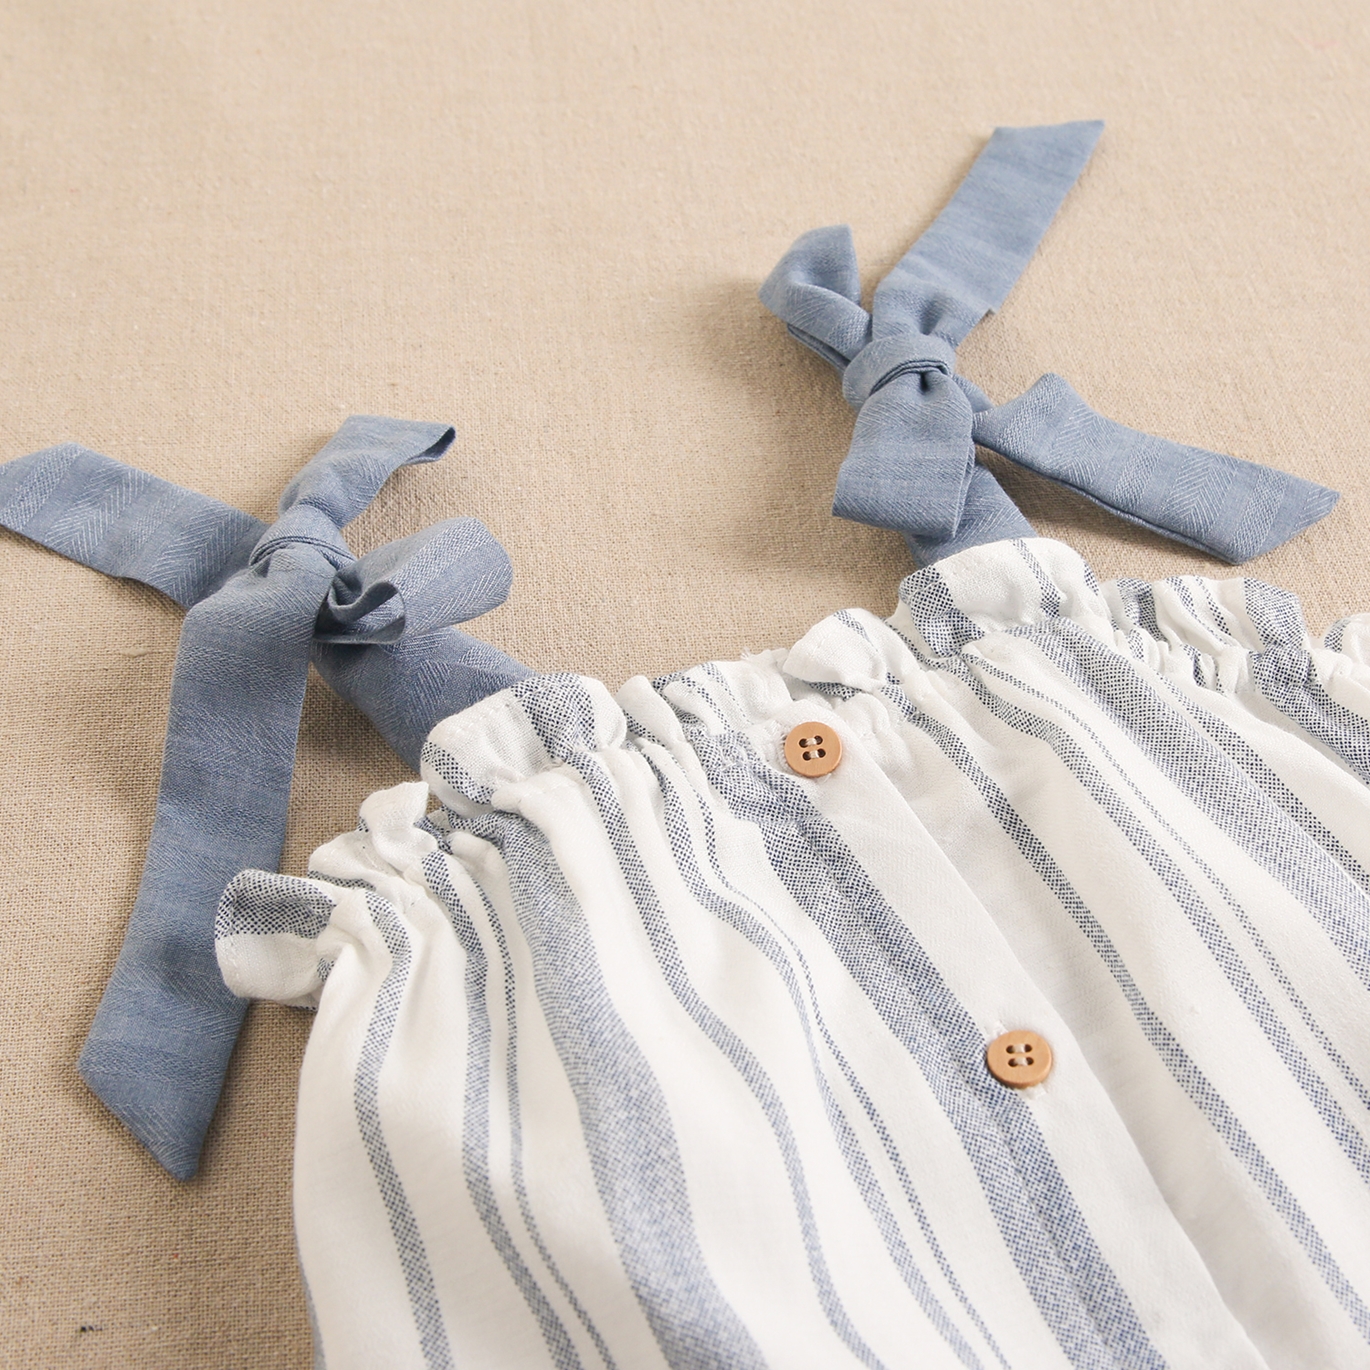 Imagen de Vestido jesusito para bebé niña de rayas azules y blancas